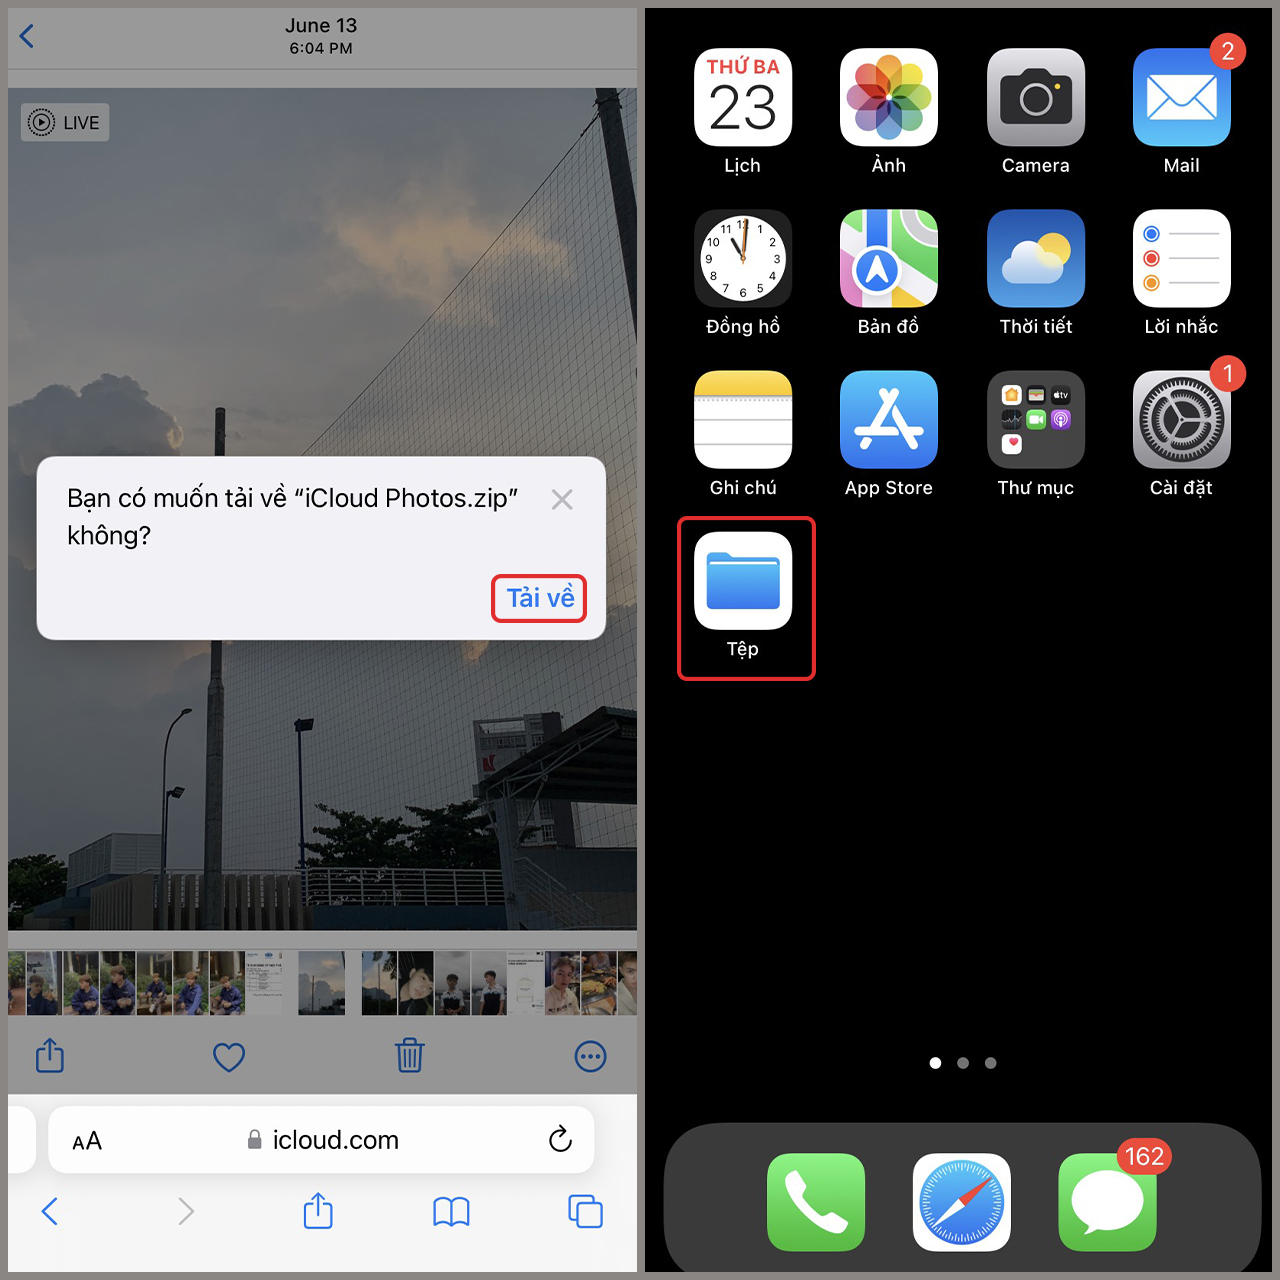 Bạn muốn trải nghiệm tốc độ tải ảnh cực nhanh trên chiếc iPhone 13 Pro Max mới nhất của mình? Không nên bỏ lỡ cơ hội tải ảnh iCloud về iPhone 13 Pro Max để khám phá những khoảnh khắc đáng nhớ và tận hưởng trải nghiệm tuyệt vời nhất trên màn hình cực lớn của iPhone.